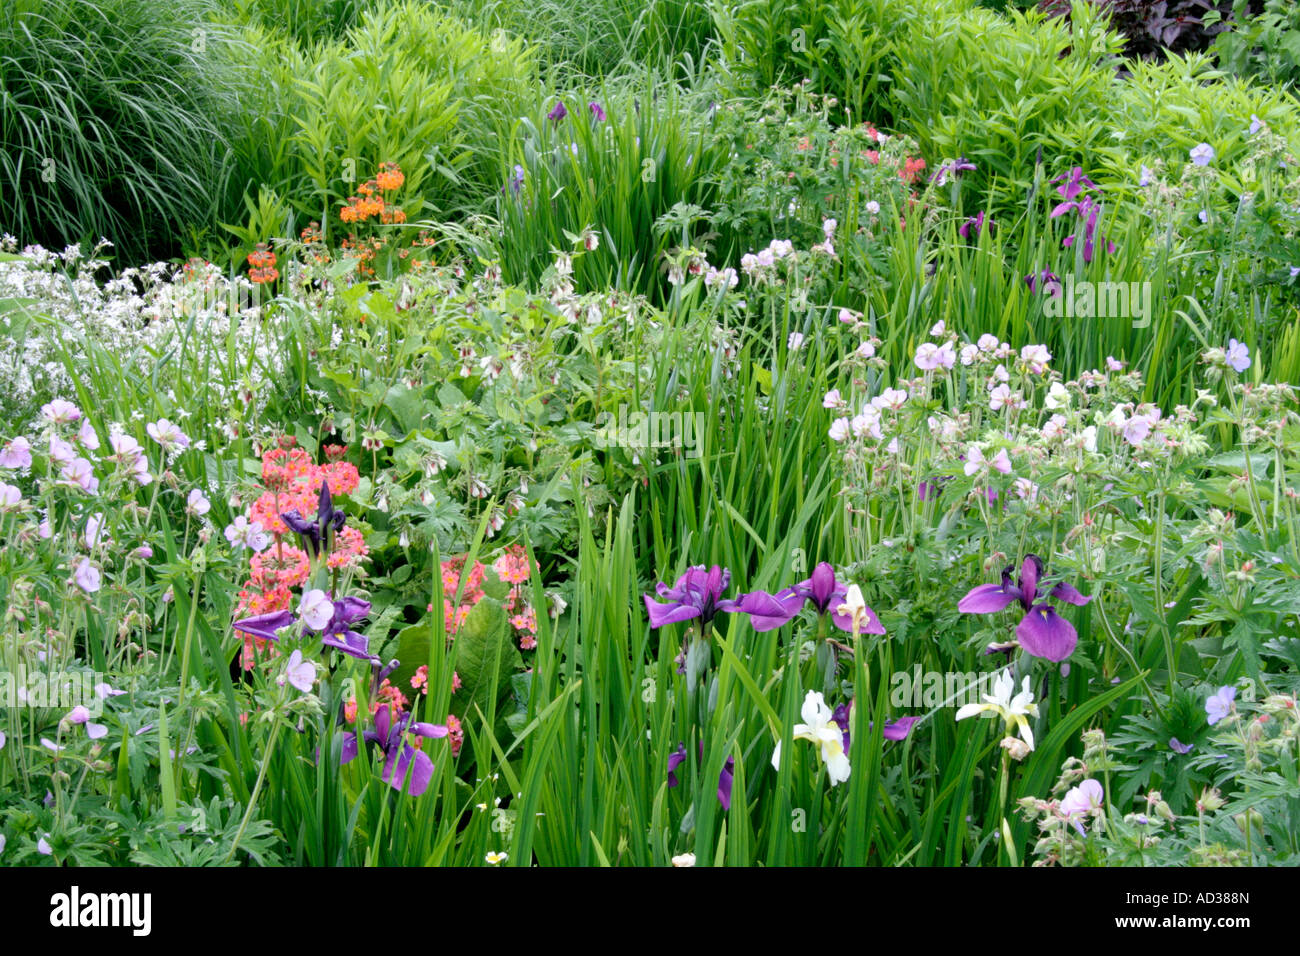 Geranium garden iris hi-res stock photography and images - Alamy